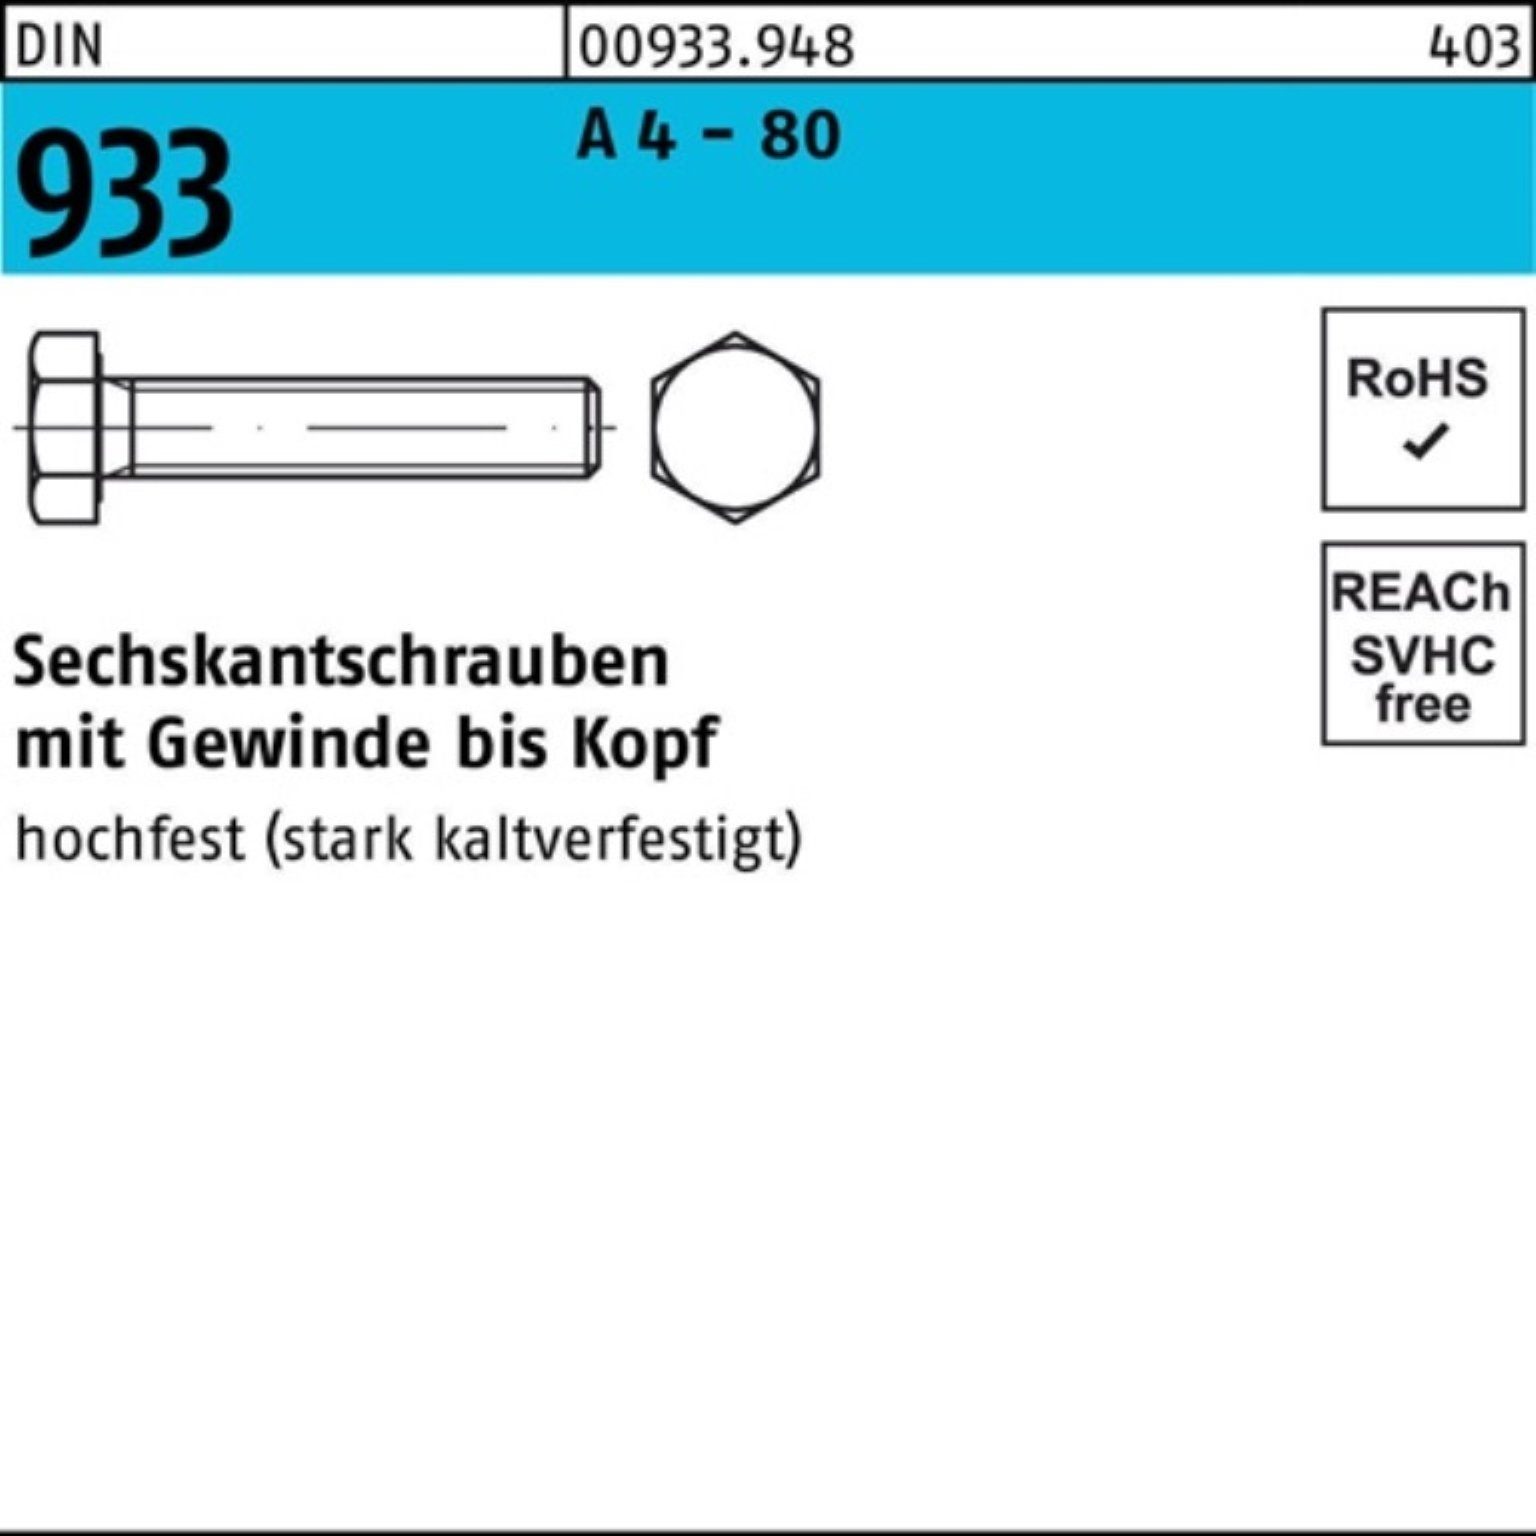 Reyher Sechskantschraube 100er Pack Sechskantschraube DIN 933 VG M8x 120 A 4 - 80 1 Stück DIN